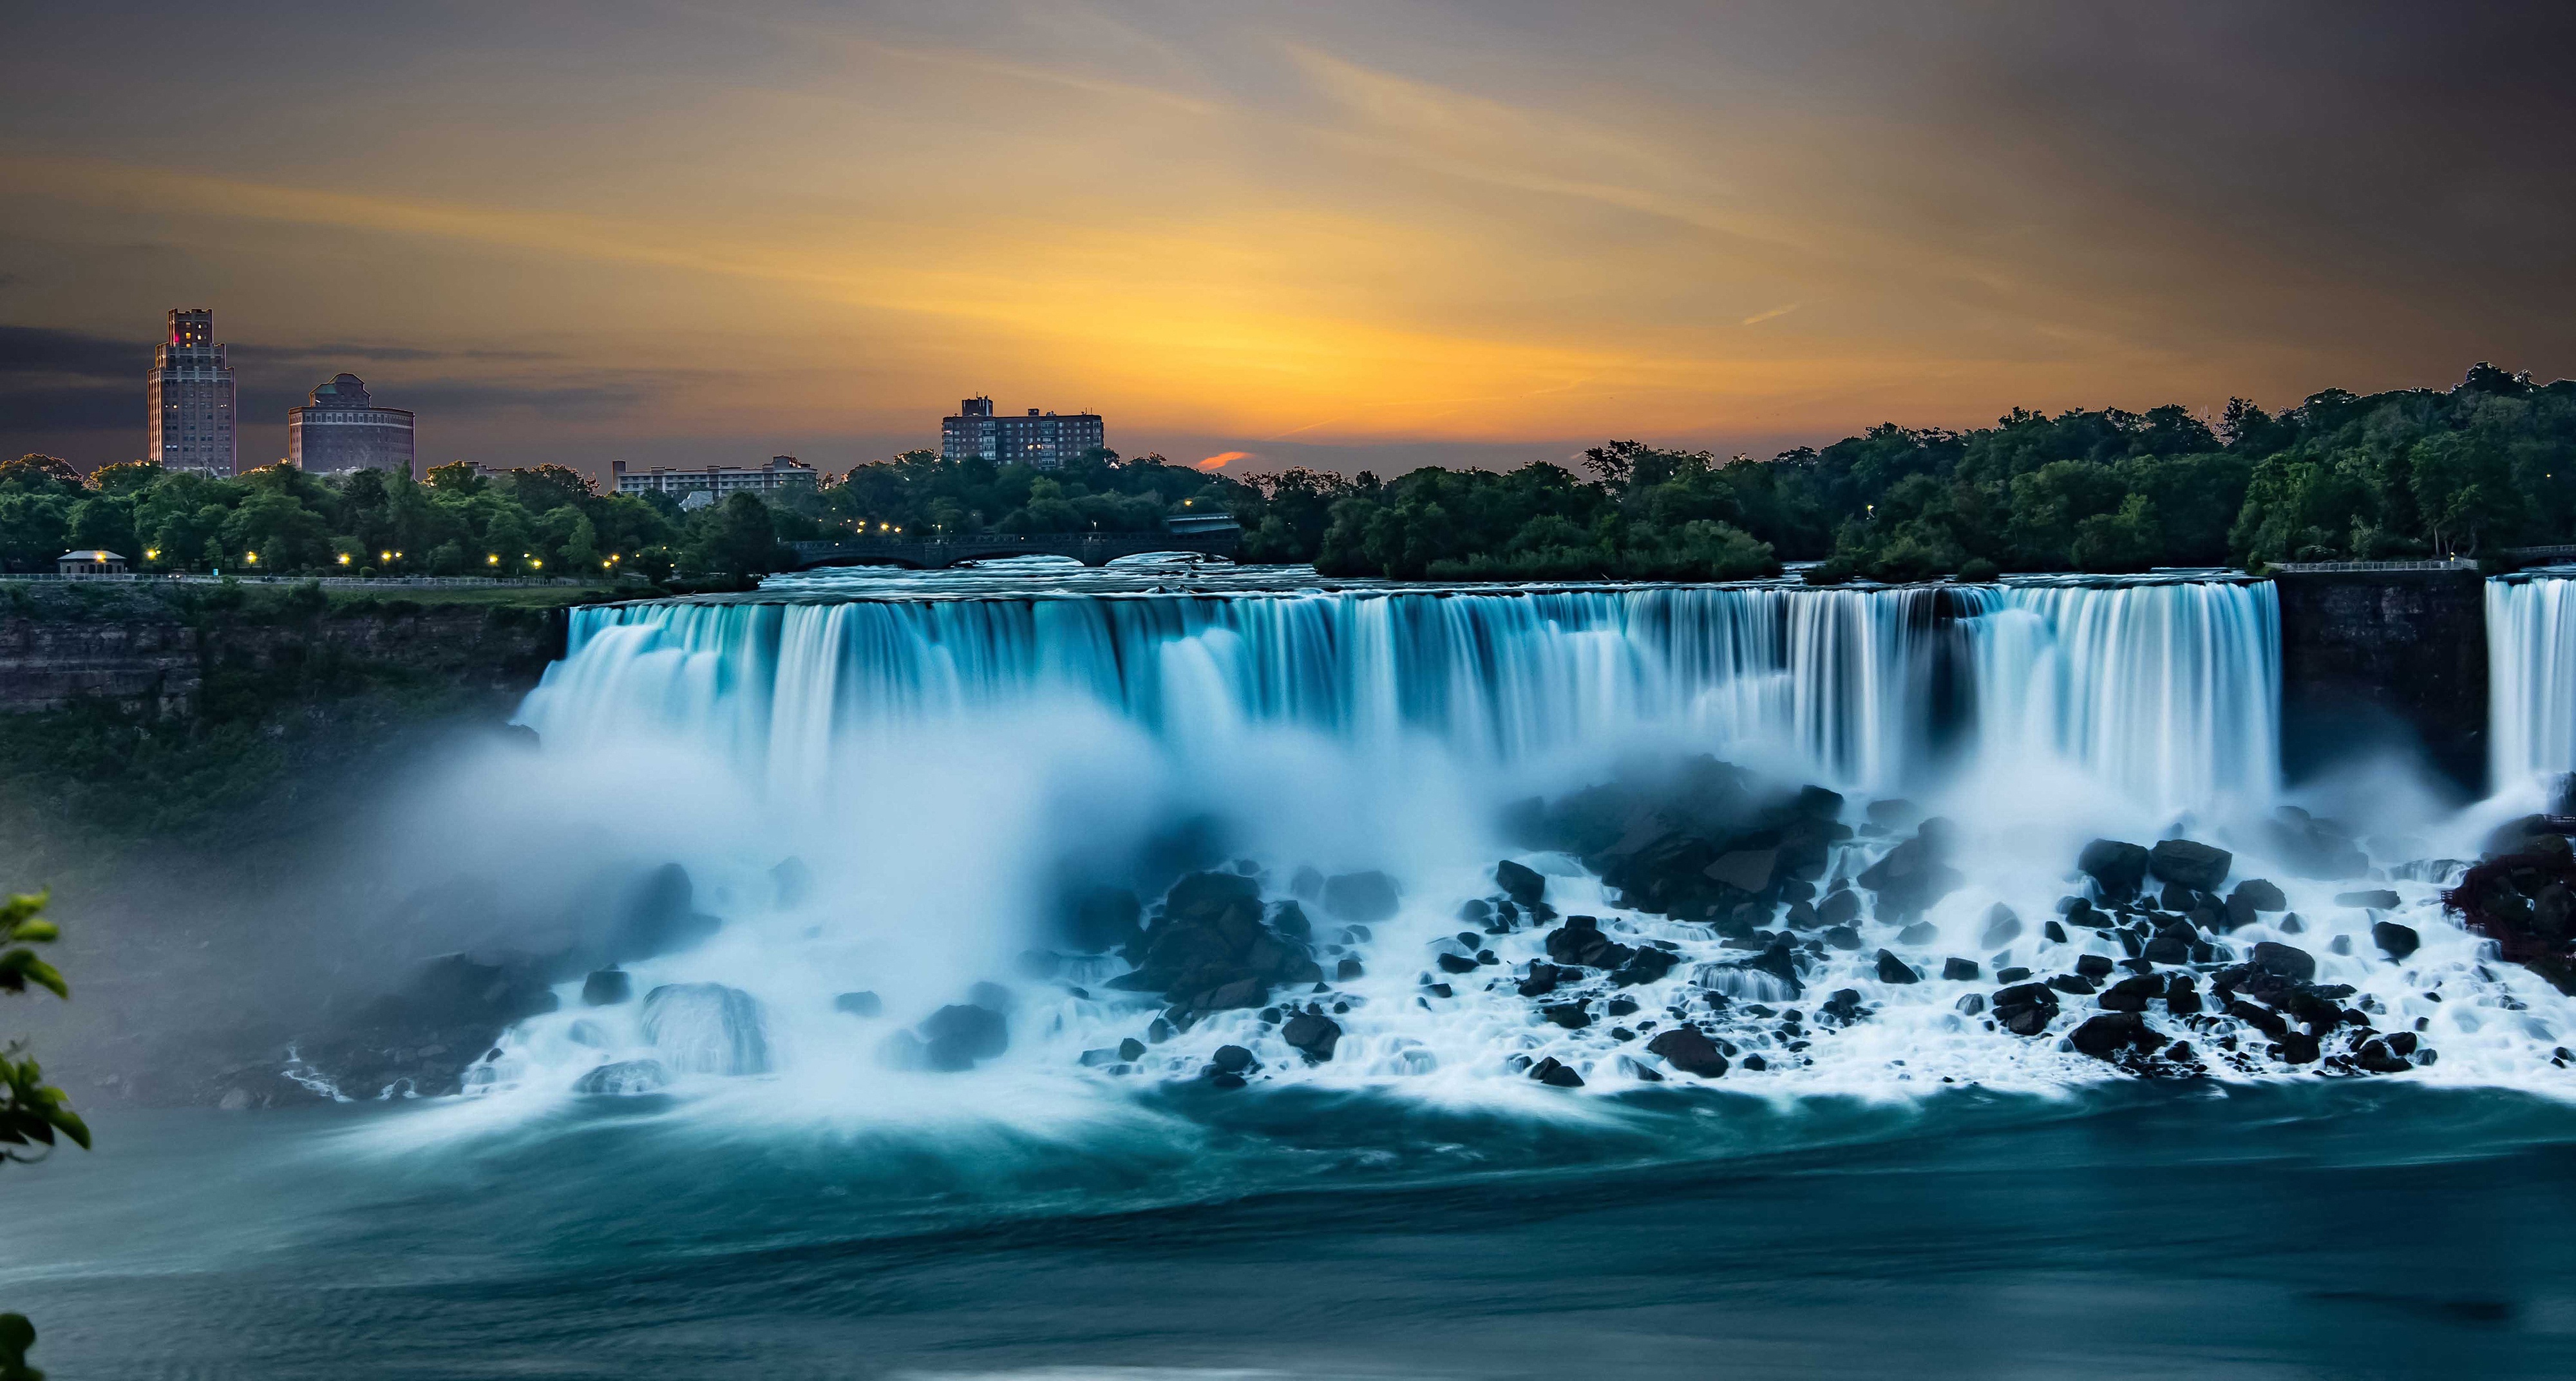 ниагарский водопад фото в хорошем качестве